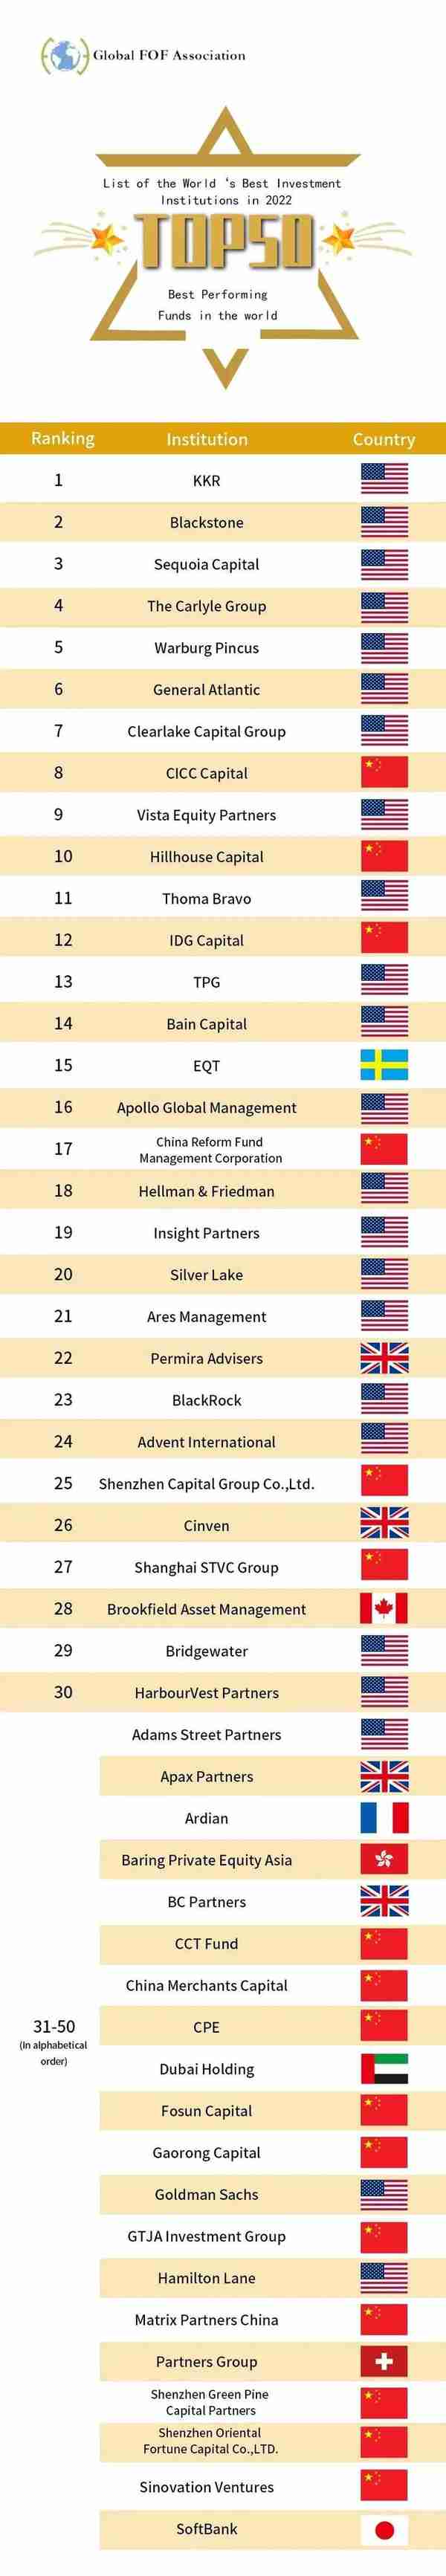 2022全球最佳投资机构榜单揭晓，福田这家机构获第八名！